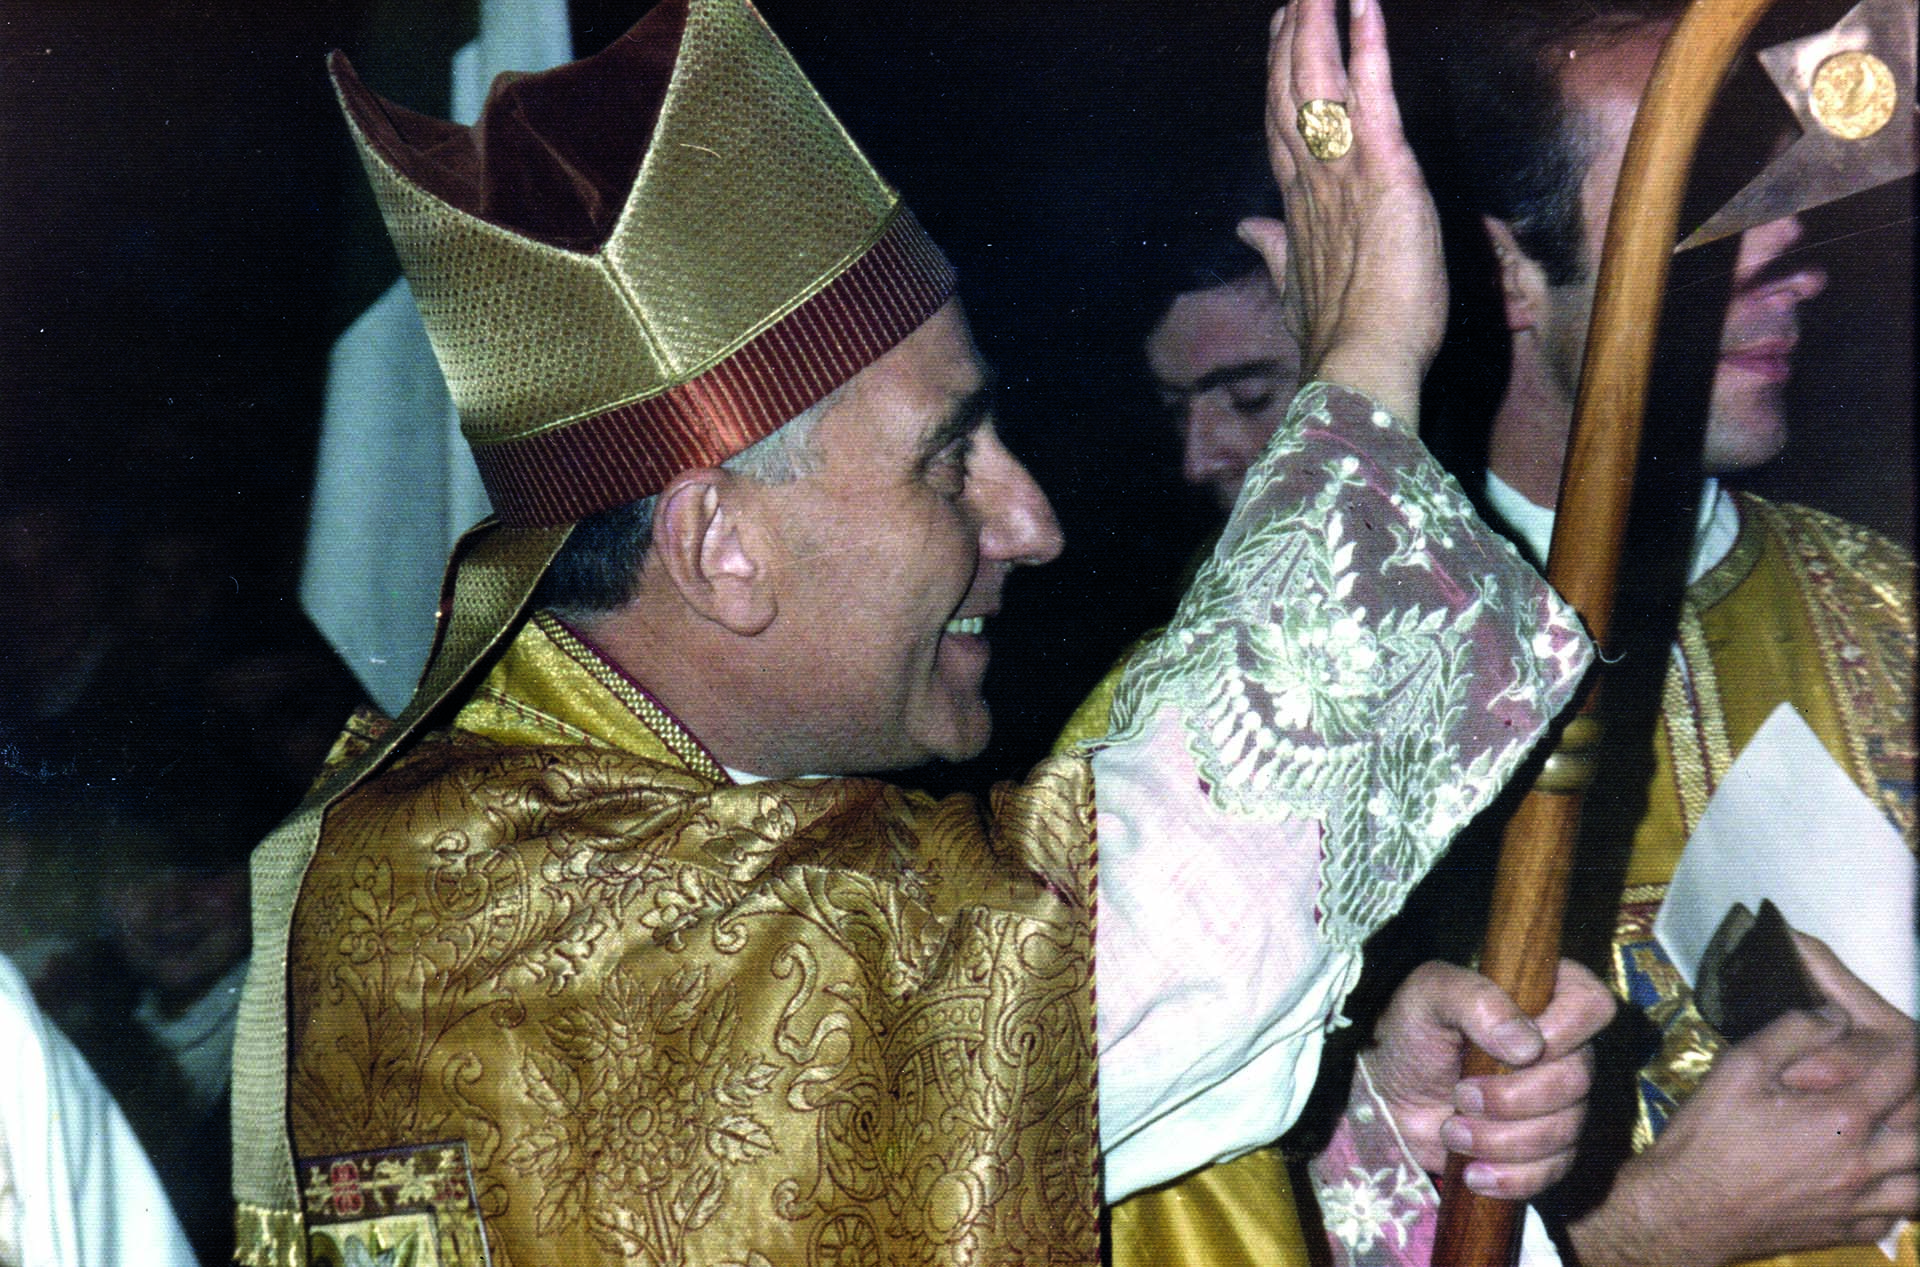 Durante la década del 70, Pironio sufrió persecuciones y amenazas (Foto: Acción Católica Argentina)